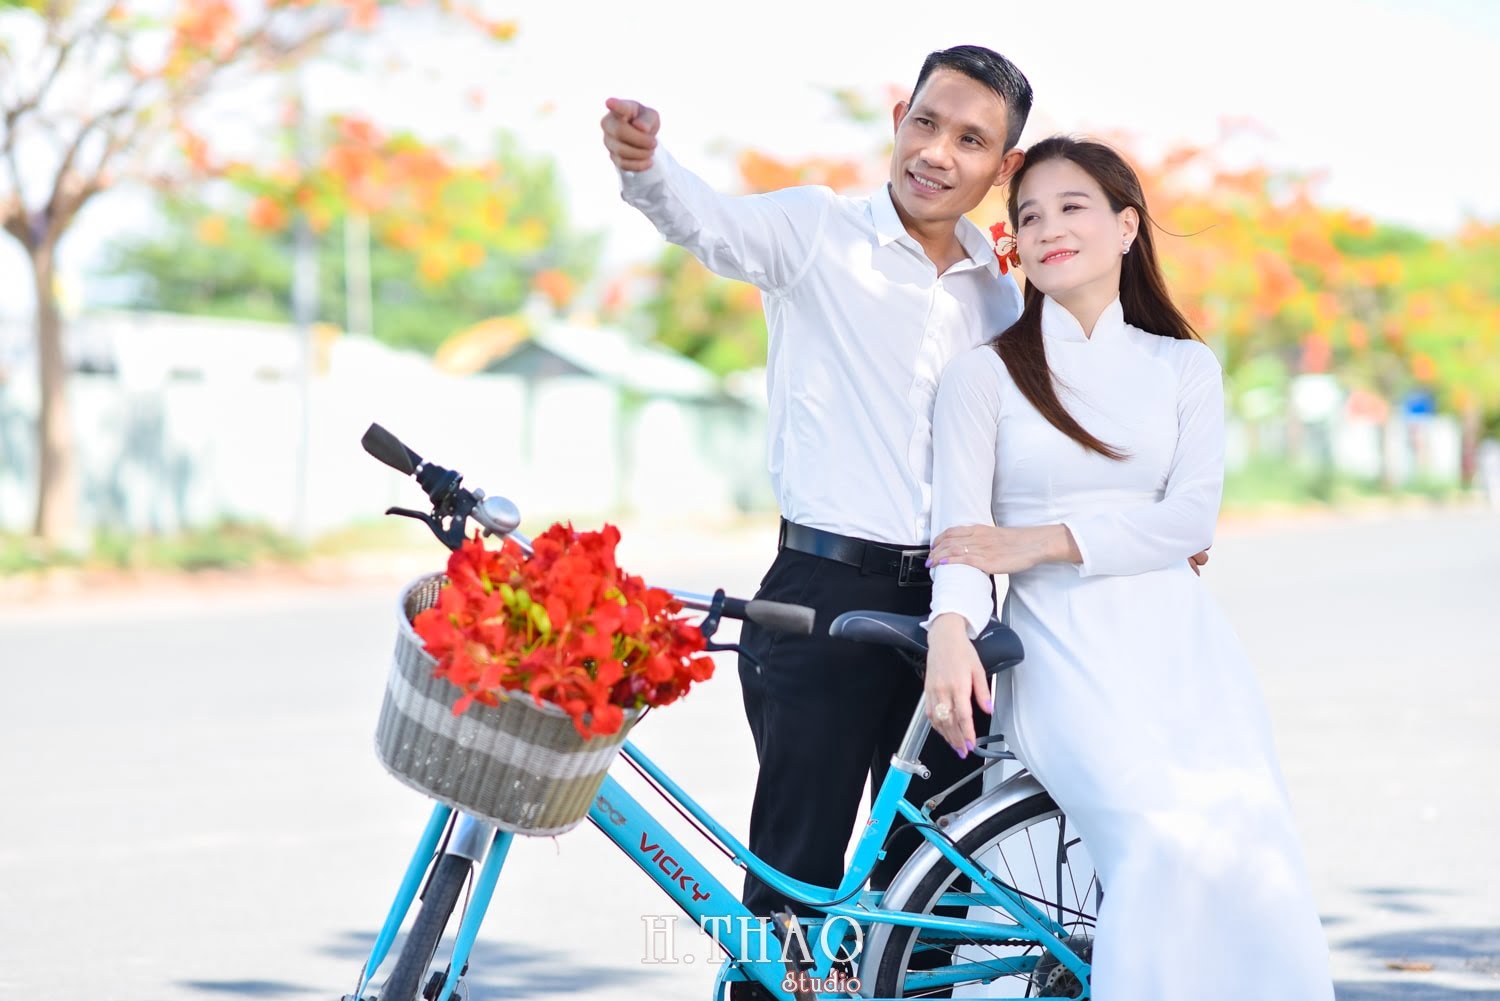 Anh hoa phuong 12 min - Bộ ảnh couple chụp với hoa phượng tuyệt đẹp - HThao Studio